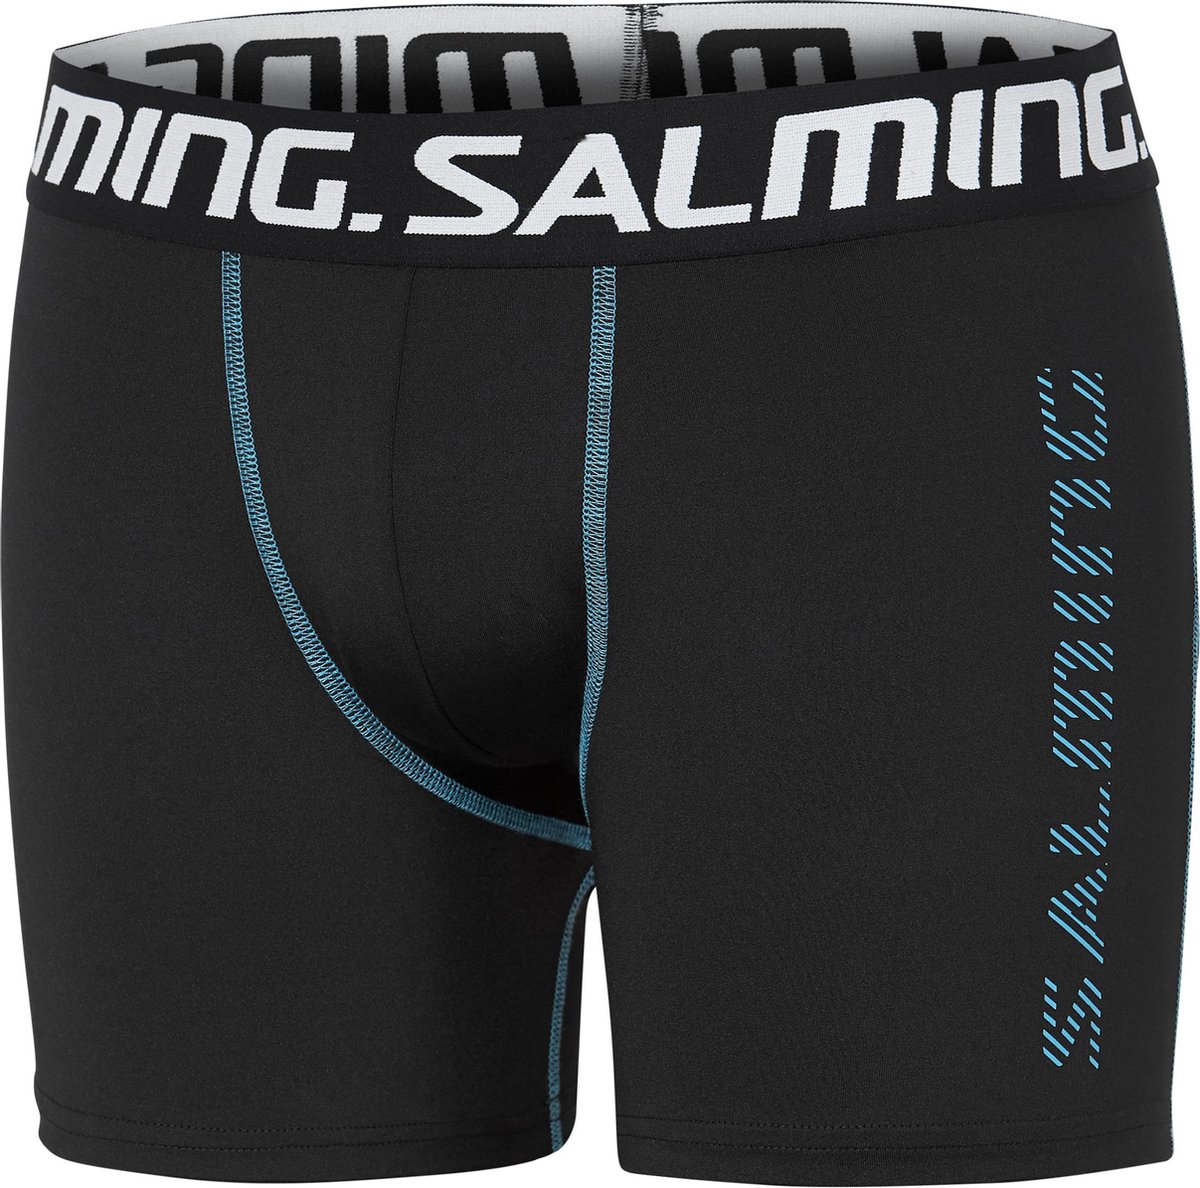 De beste boxershorts- Salming- heren-extra long boxershort-sport- microvezel- maat M- zwart-ongoing